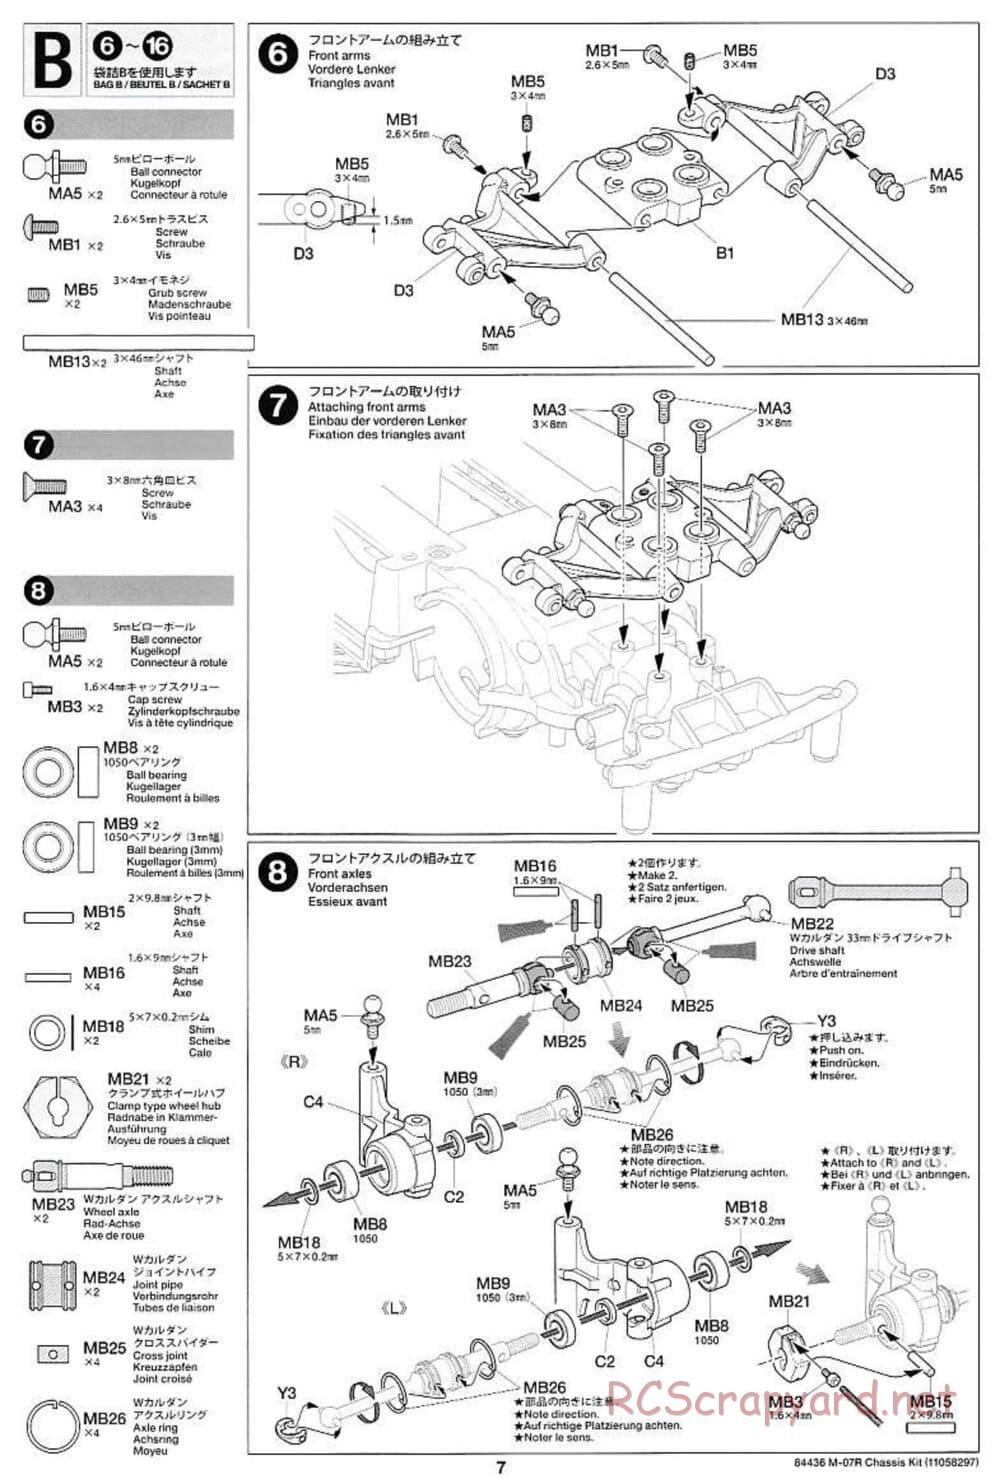 Tamiya - M-07R Chassis - Manual - Page 7